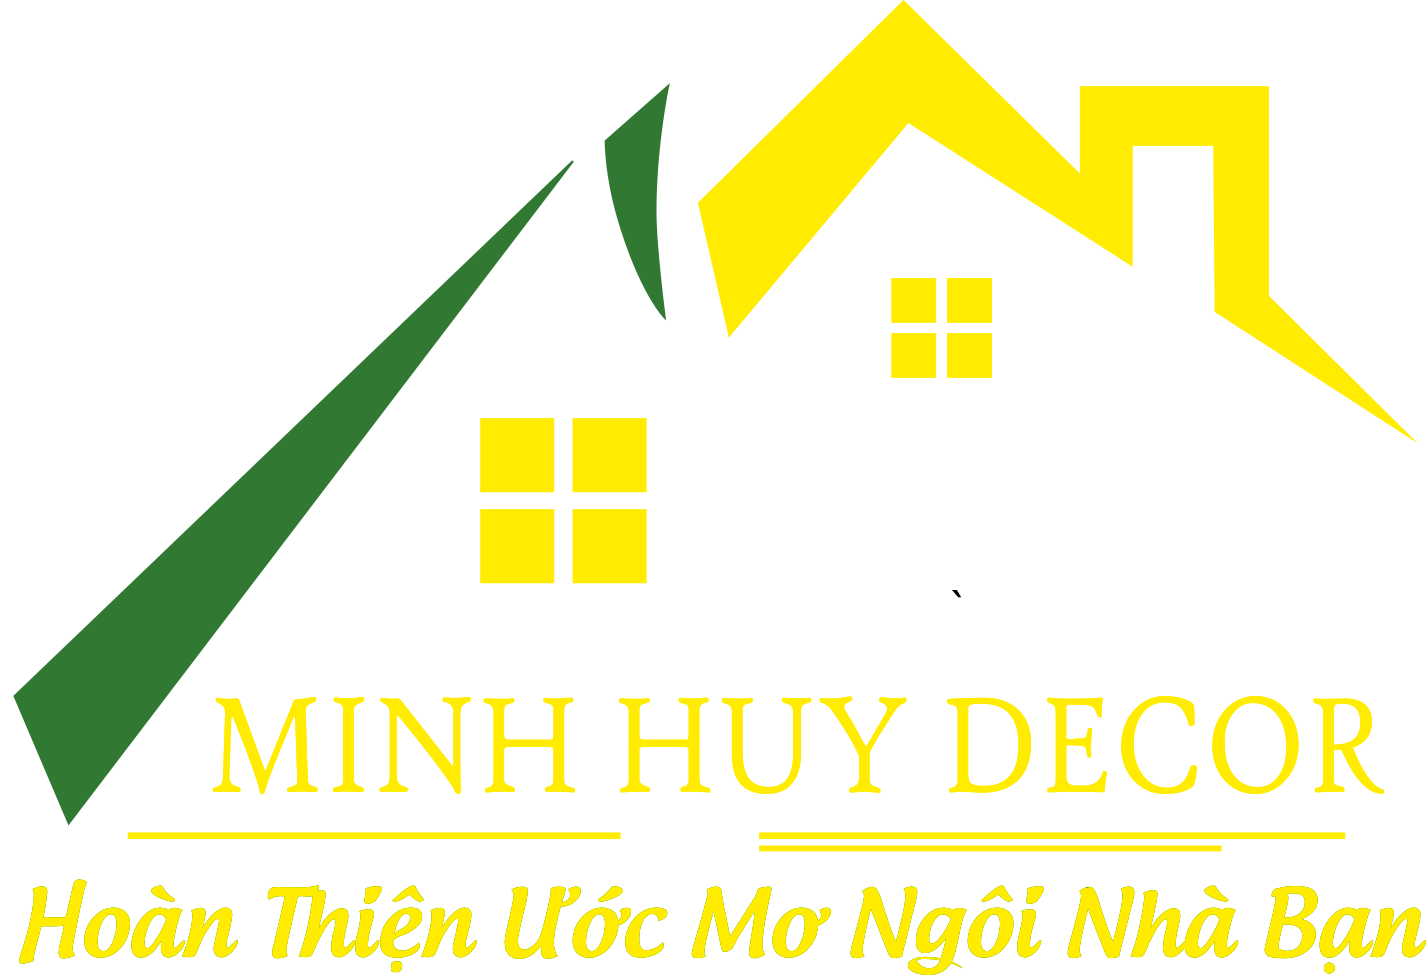 Minh Huy Decor